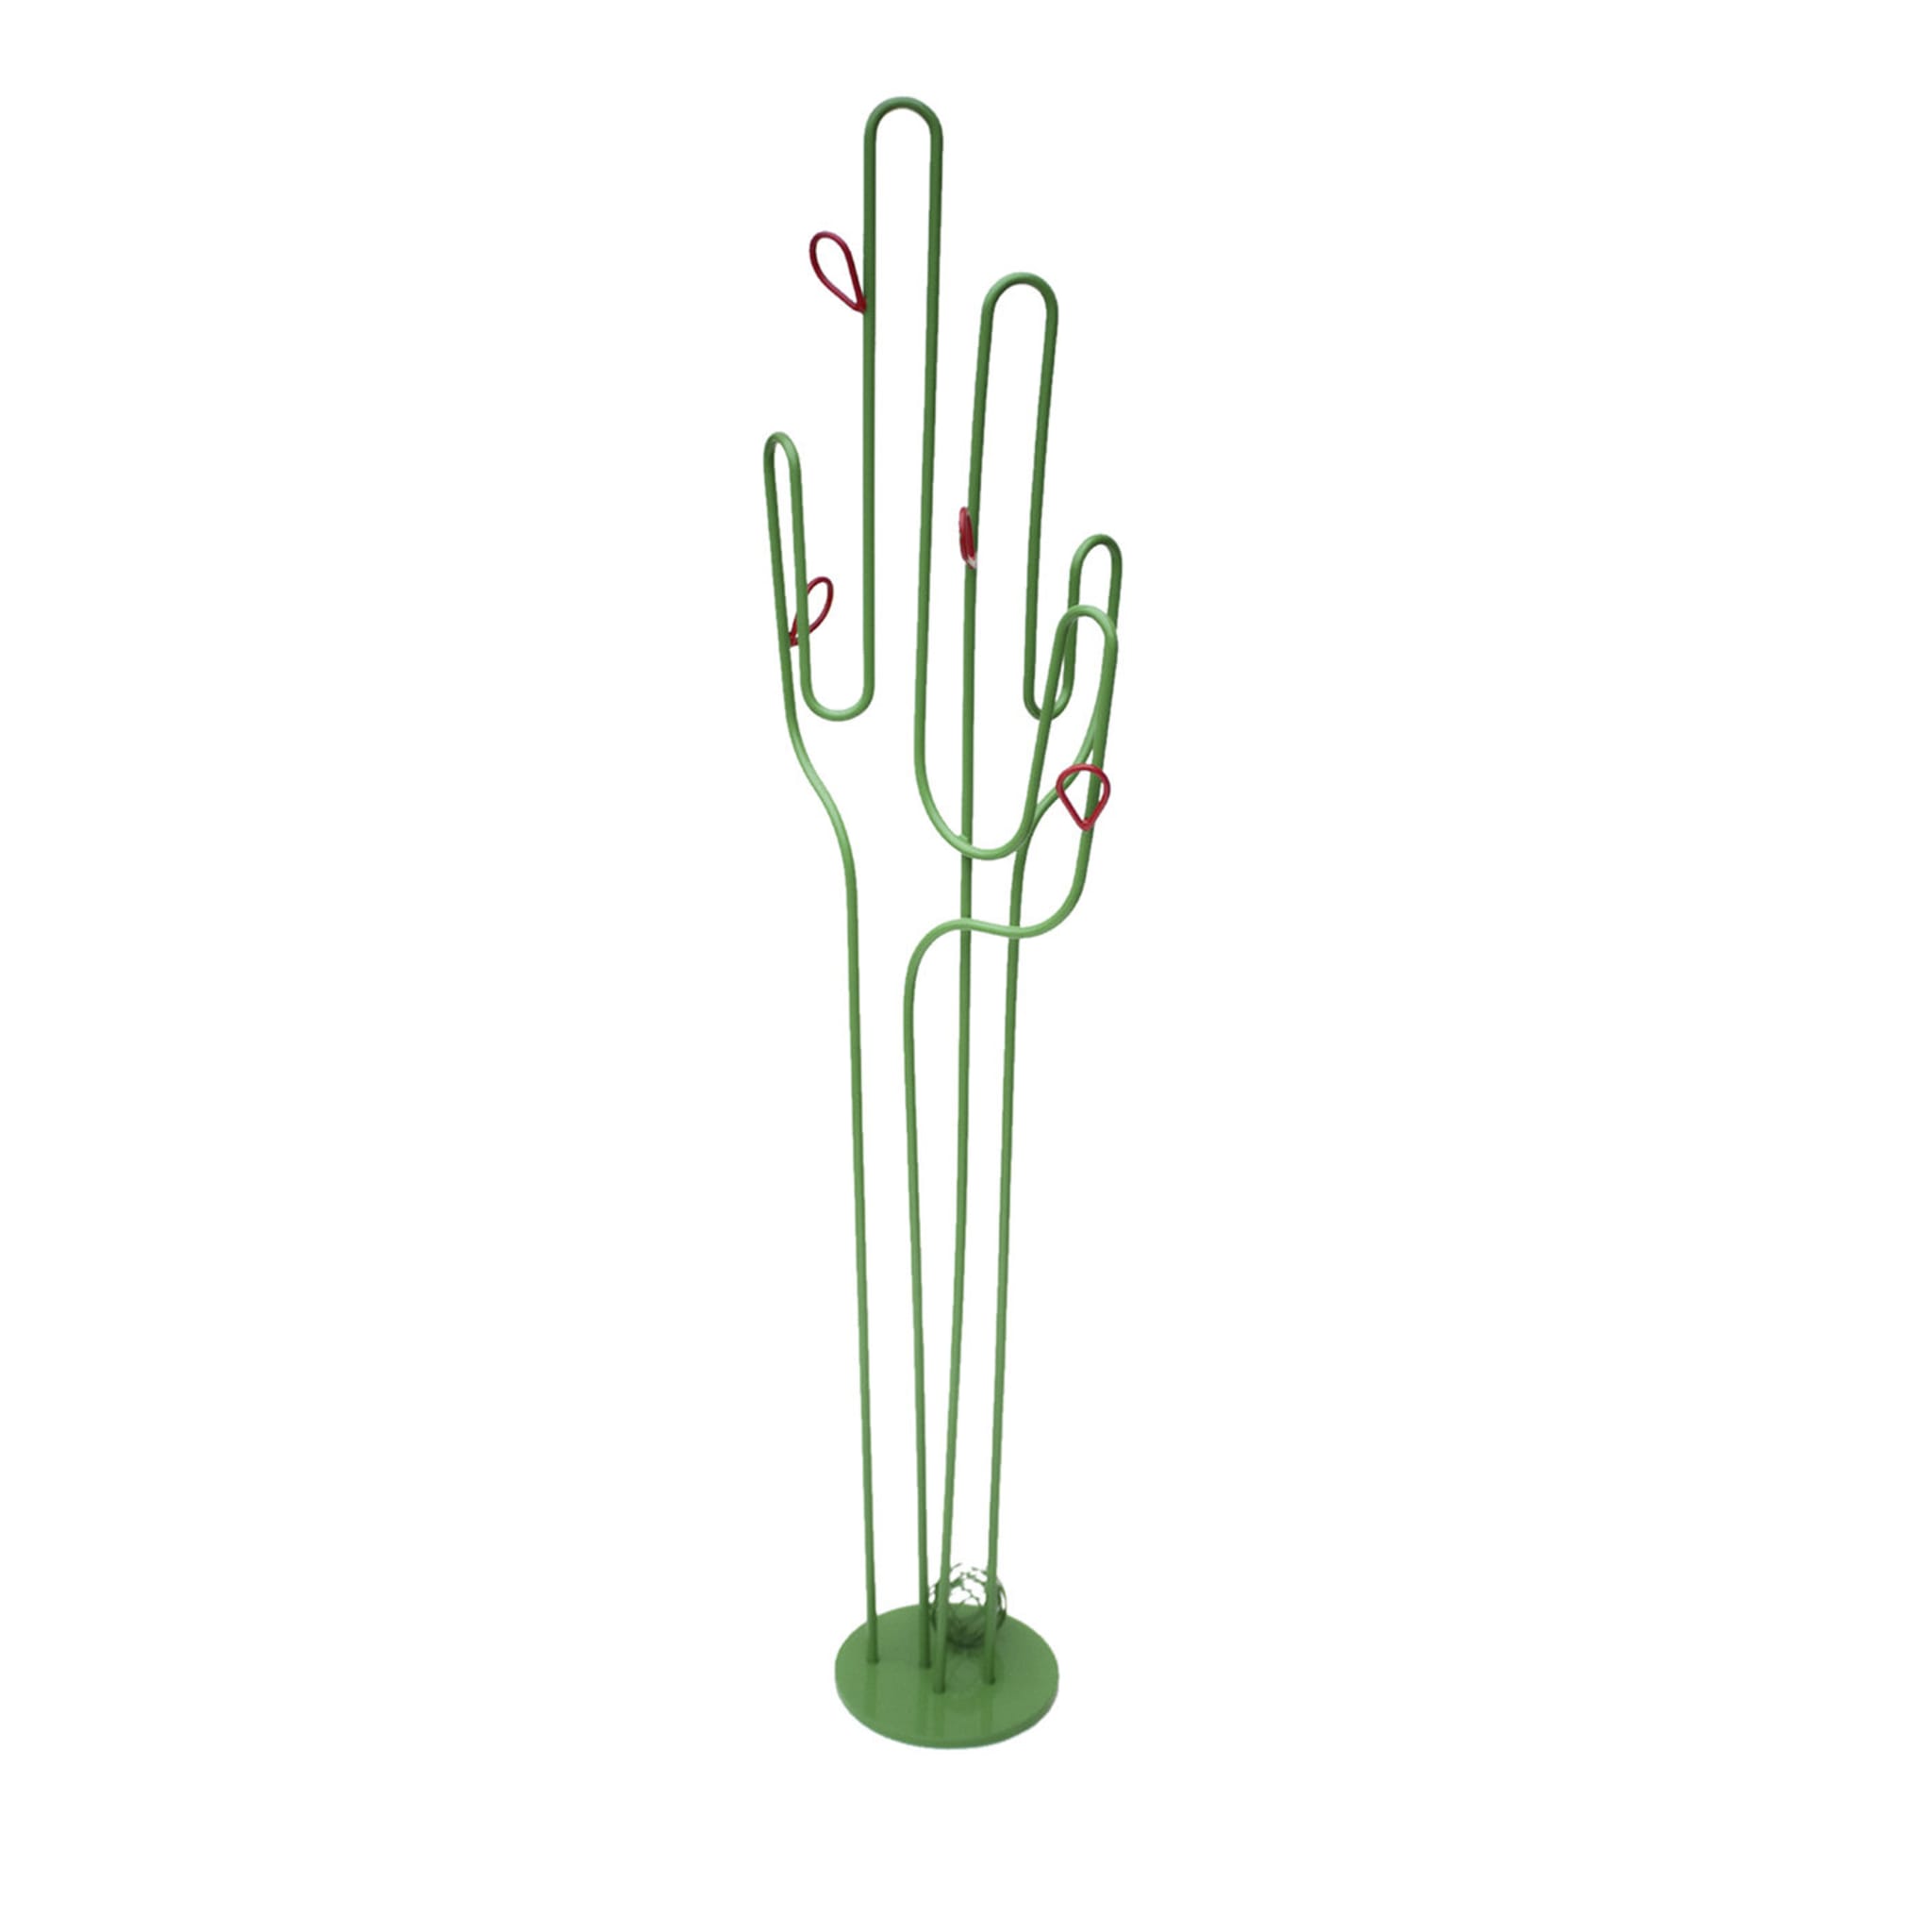 Perchero Cactus - Vista principal